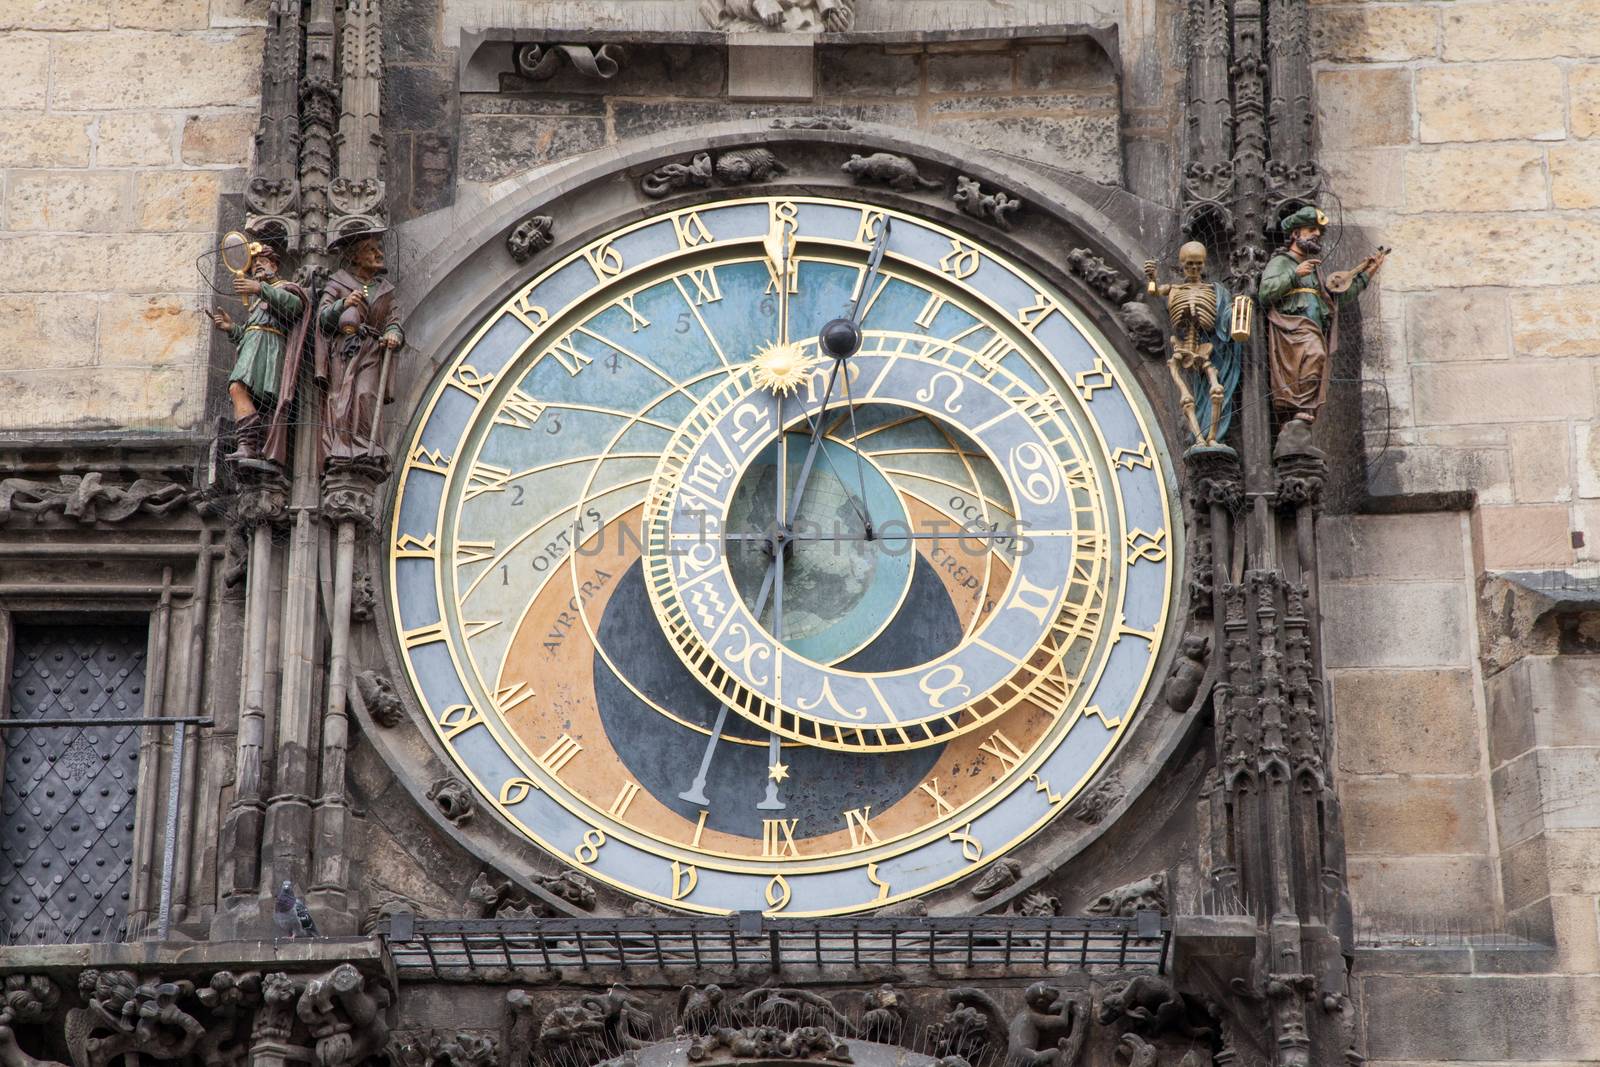 Astronomical clock in Prague, Czech Republic by haiderazim